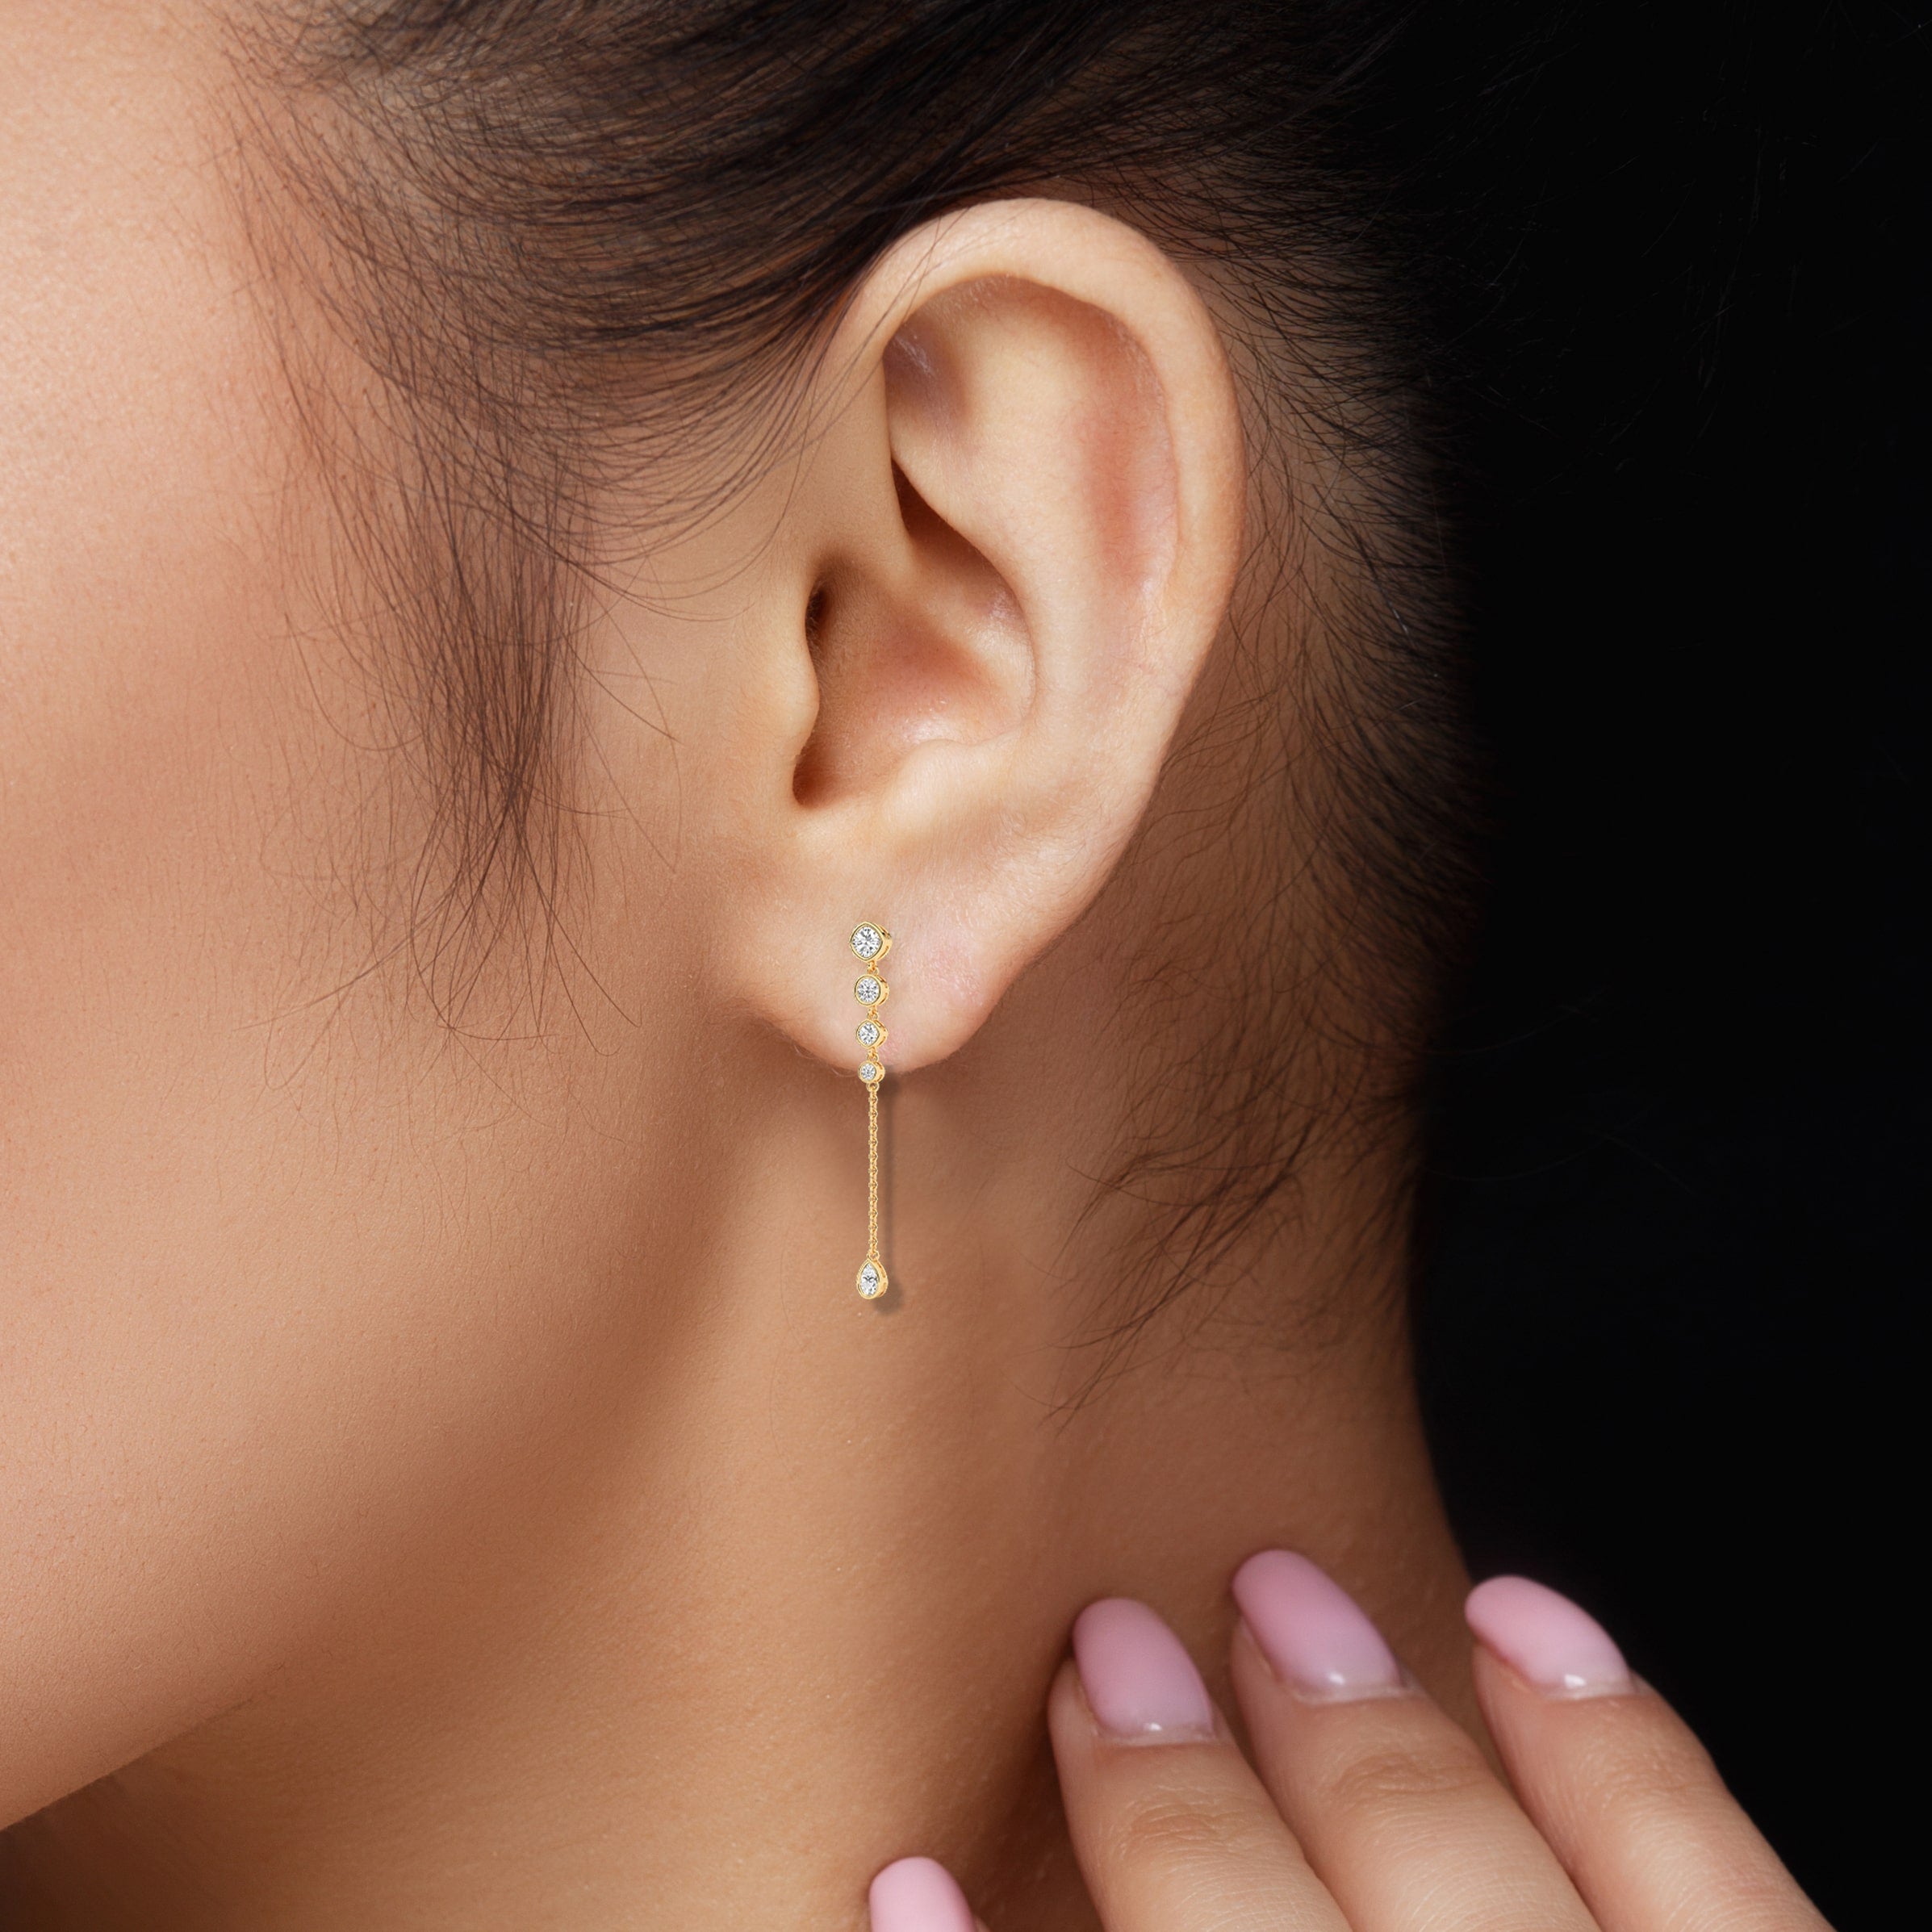 diamond drop earrings on ear